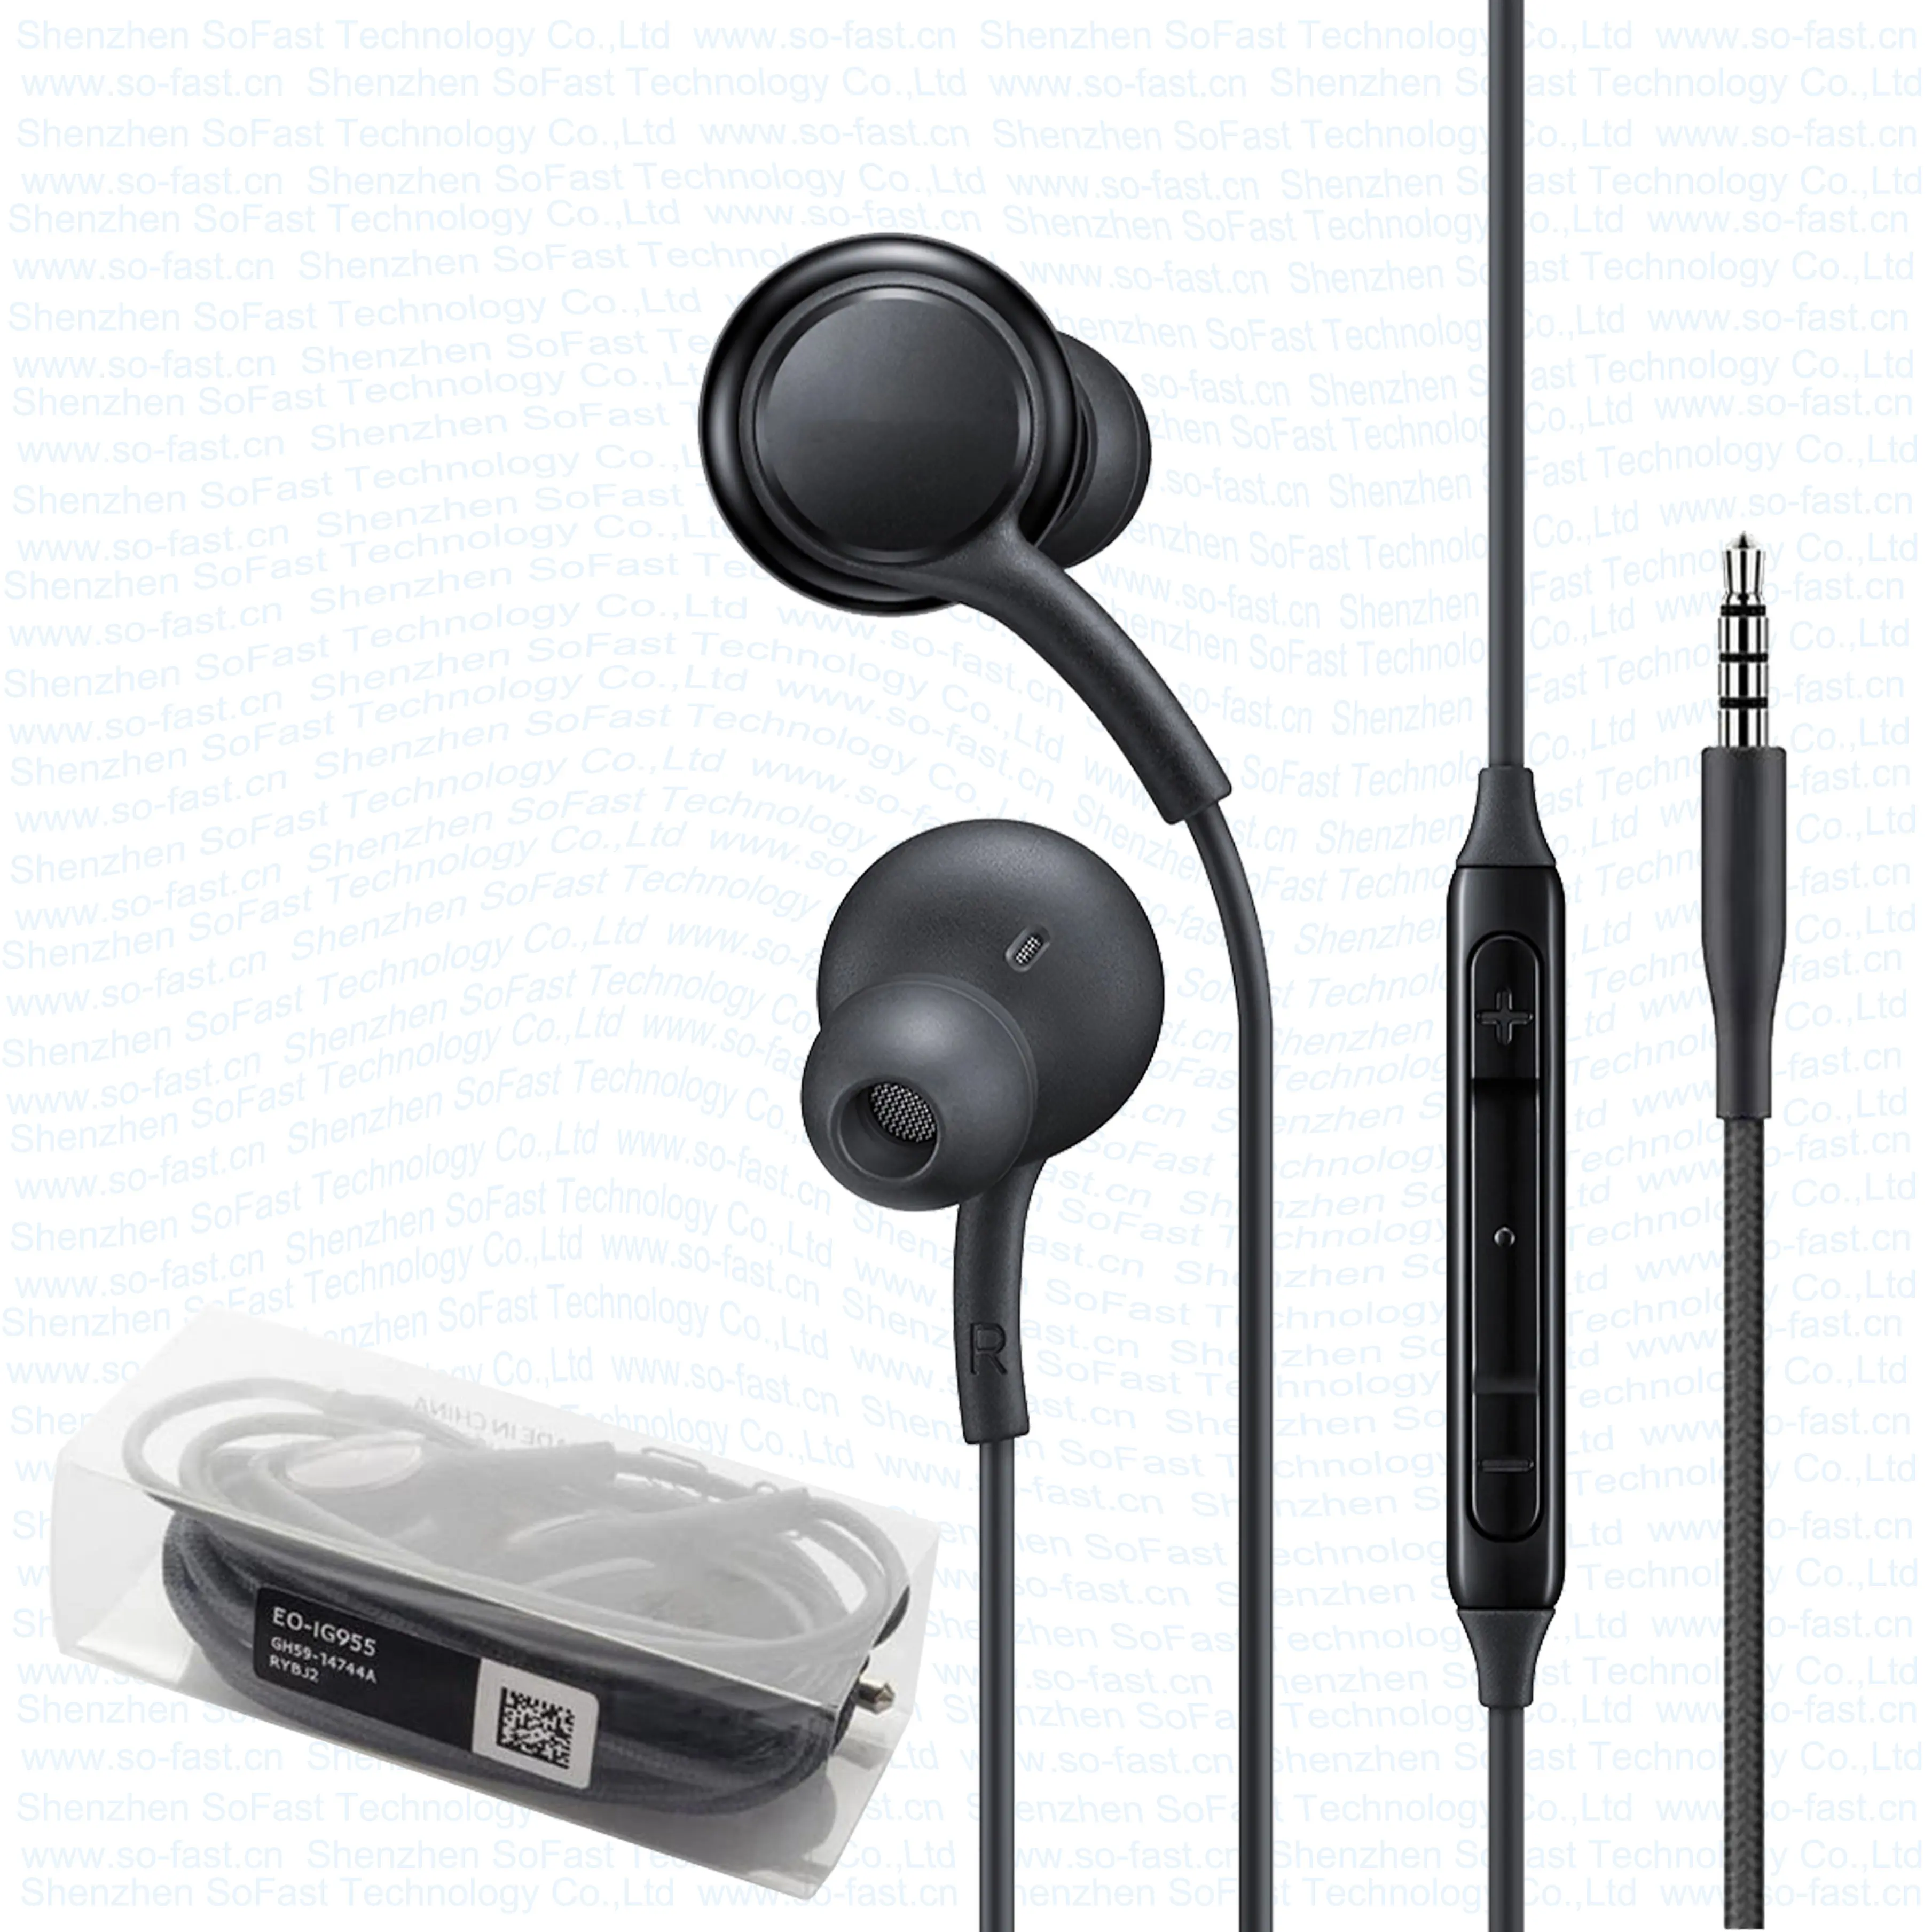 मूल गुणवत्ता हेडसेट के लिए दूरदराज के Mic के साथ कान Headphones में S8/S9 Akg के लिए 3.5mm जैक ईरफ़ोन